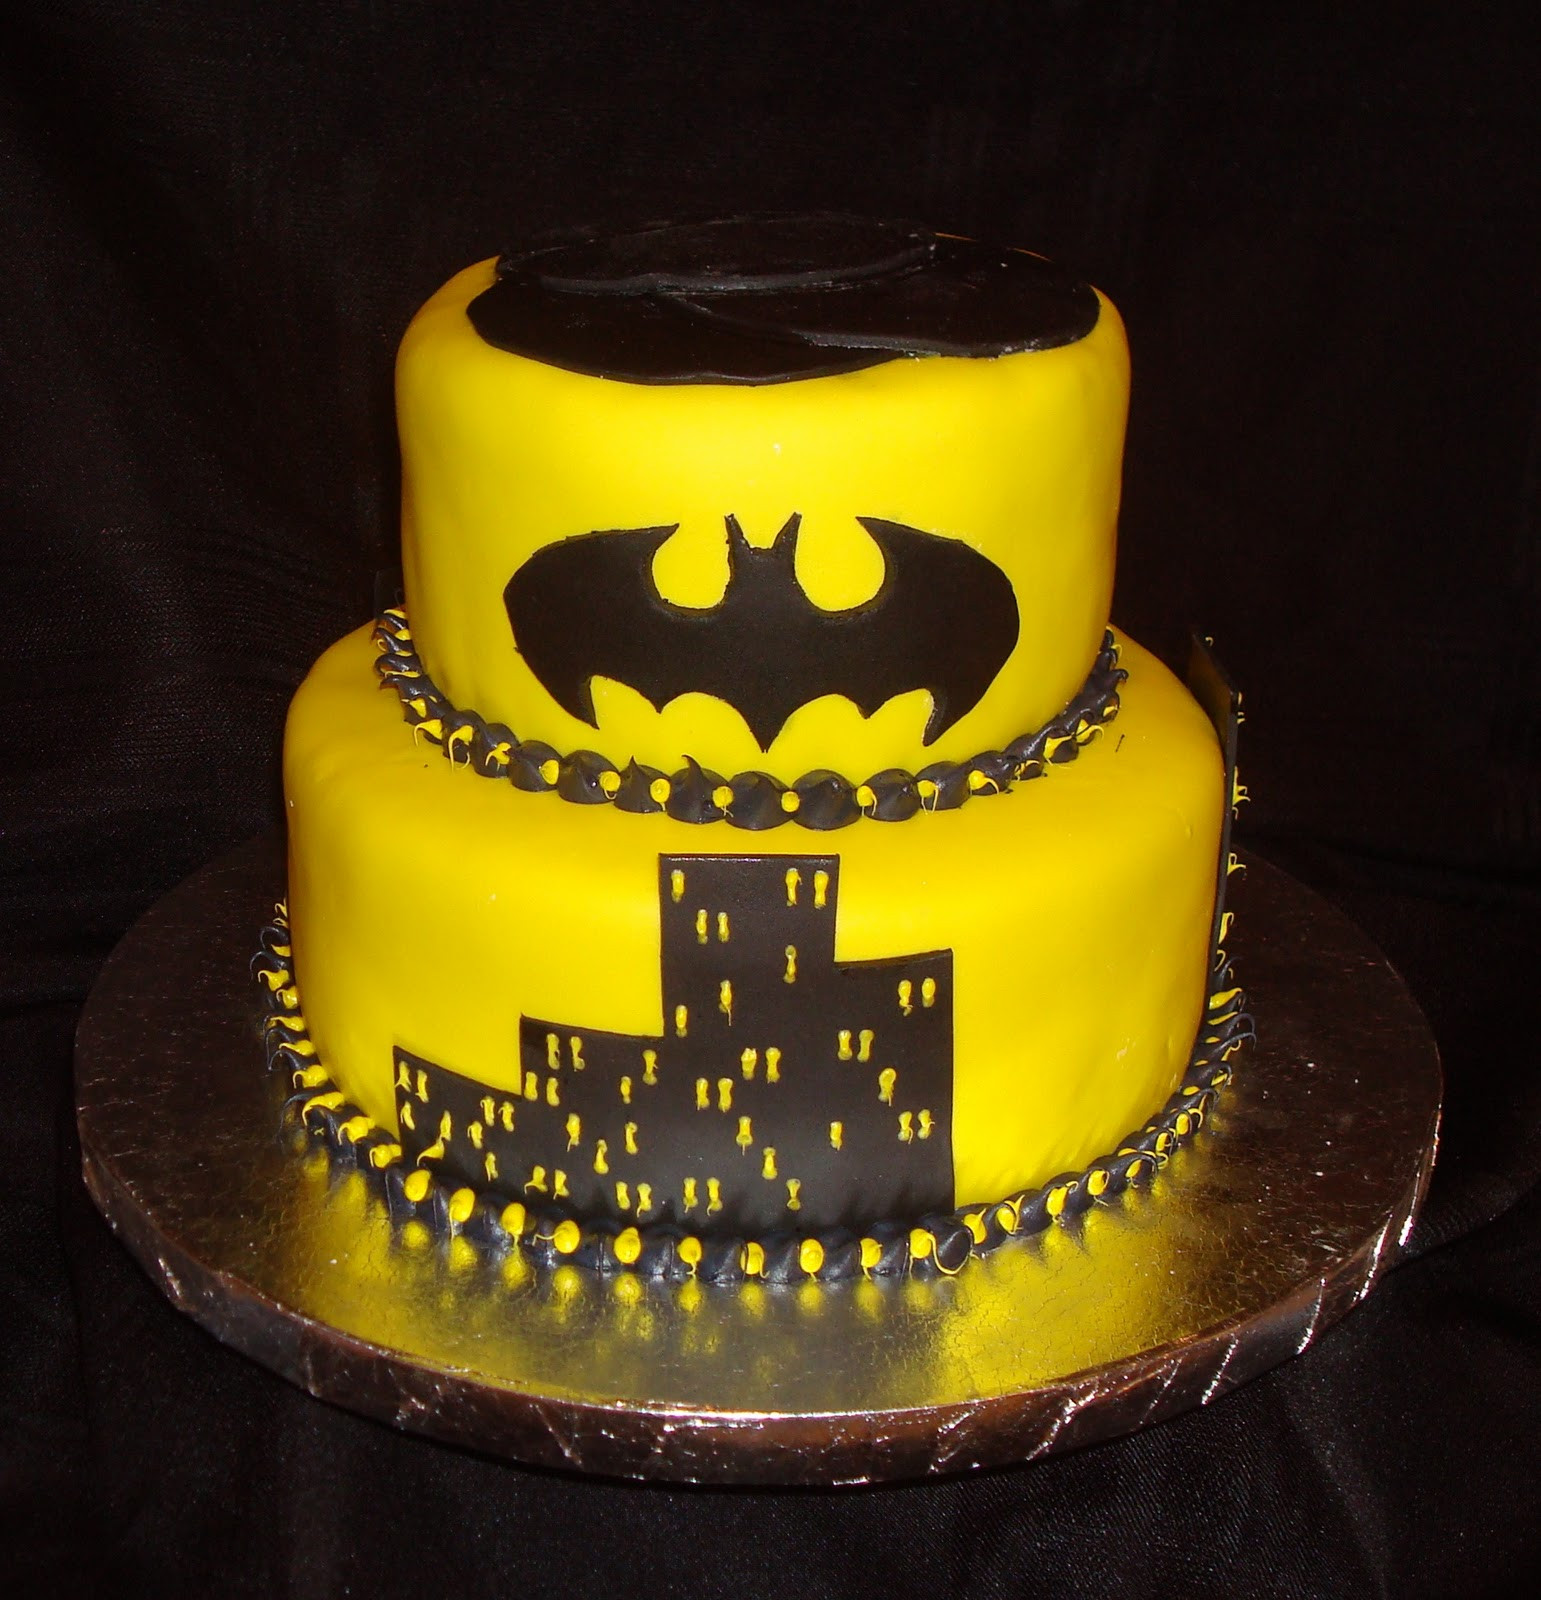 Batman Birthday Cakes
 Batman Cakes – Decoration Ideas